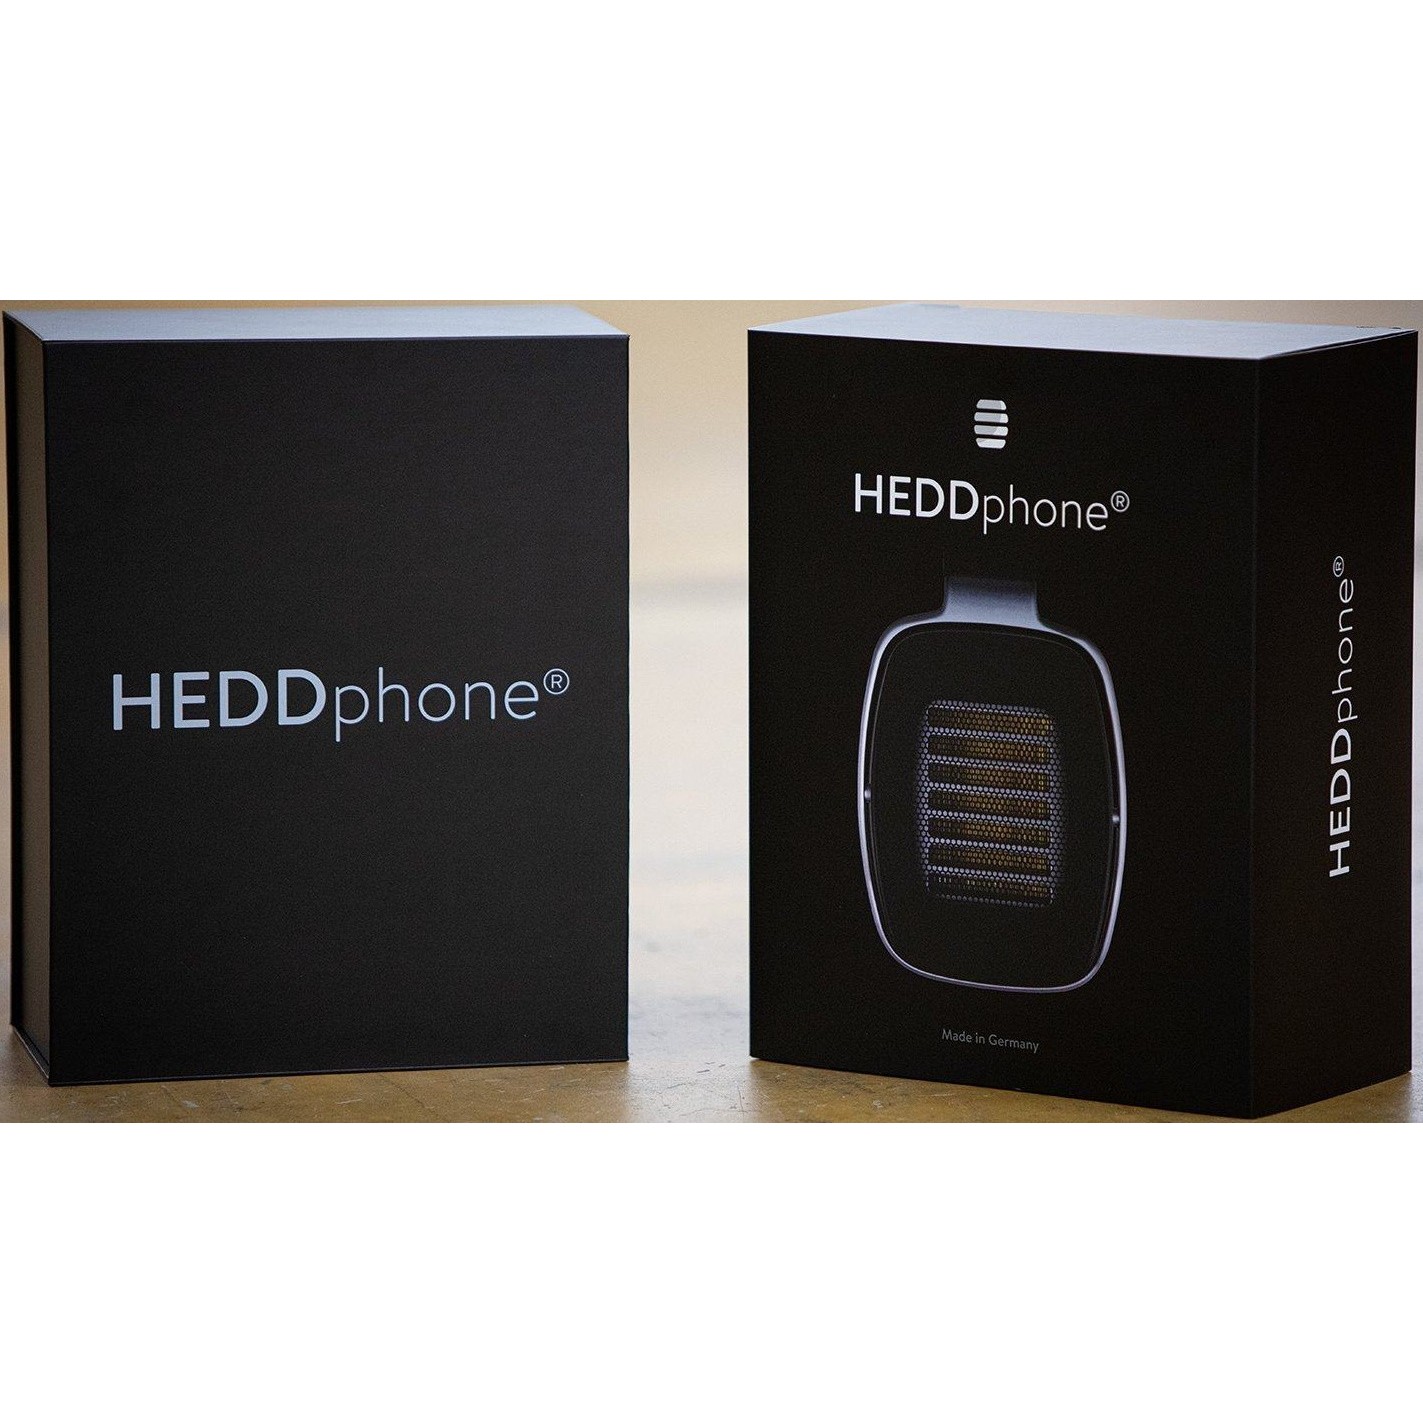 Eversolo a6 master edition. Hedd heddphone one АЧХ. Hedd Audio фирма что производит. Наушники Hedd heddphone, Black. Наушники Hedd heddphone.